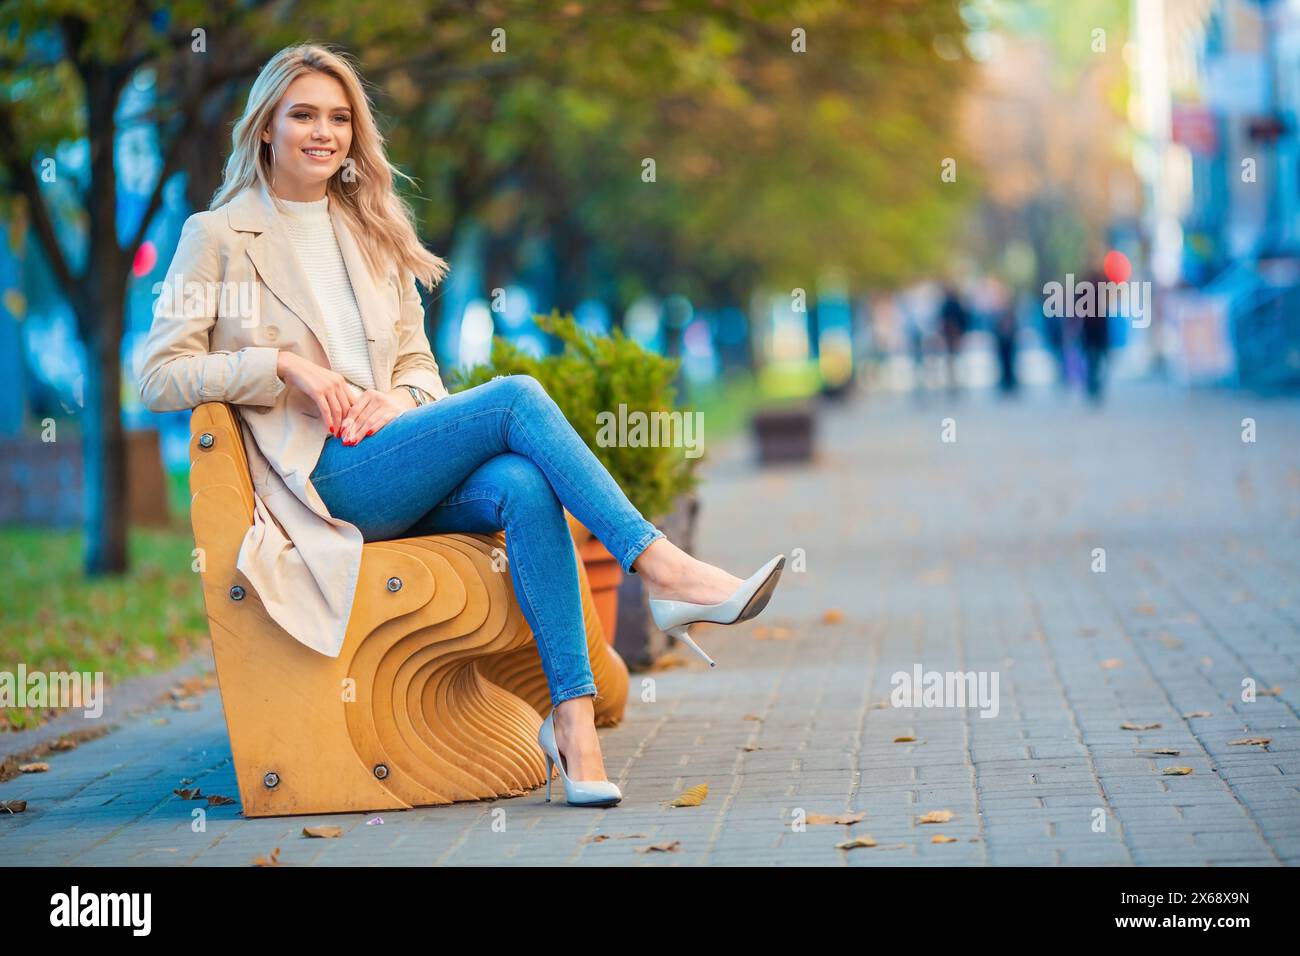 Horizontales Porträt eines lächelnden jungen blonden Mädchens, das entspannt auf einer Holzbank sitzt und blaue Jeans und einen beigen Trenchcoat trägt Stockfoto